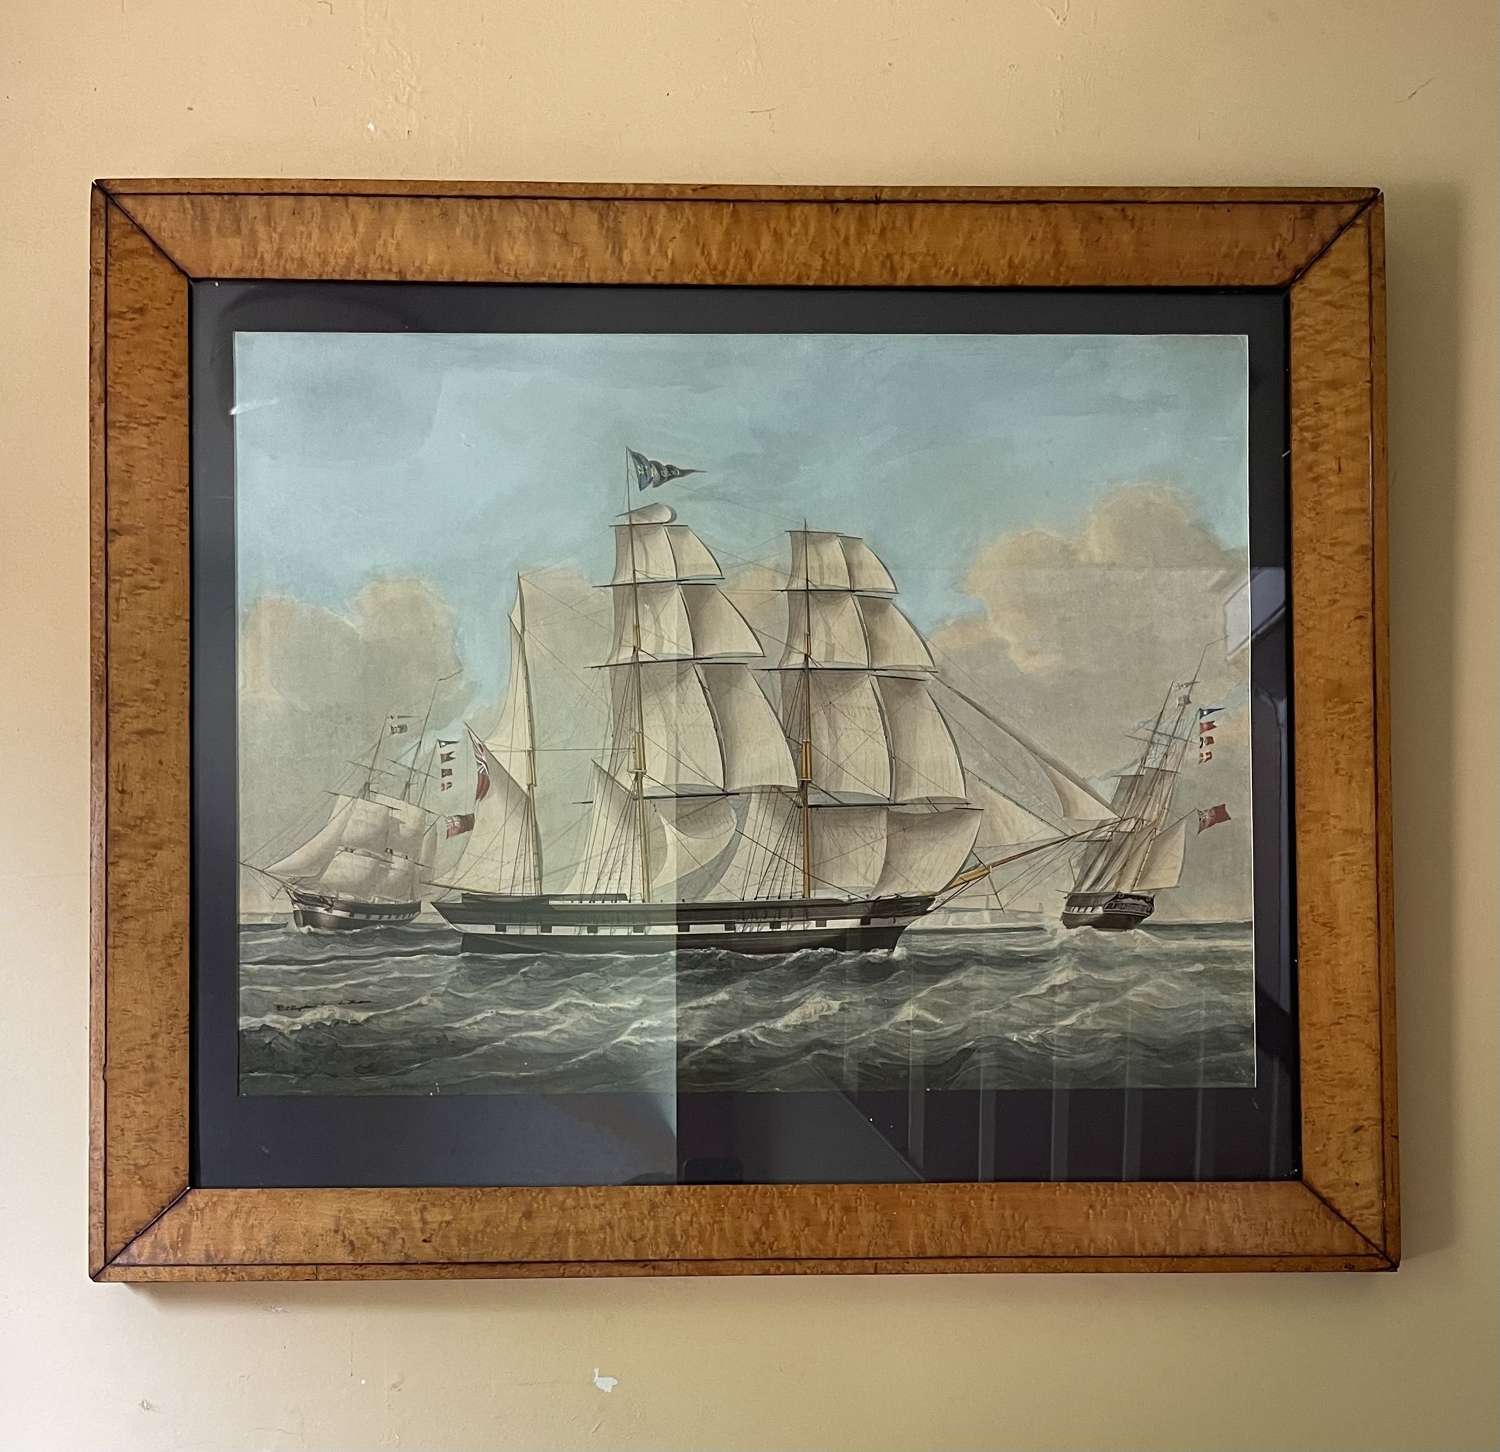 A large 19th century ship portrait